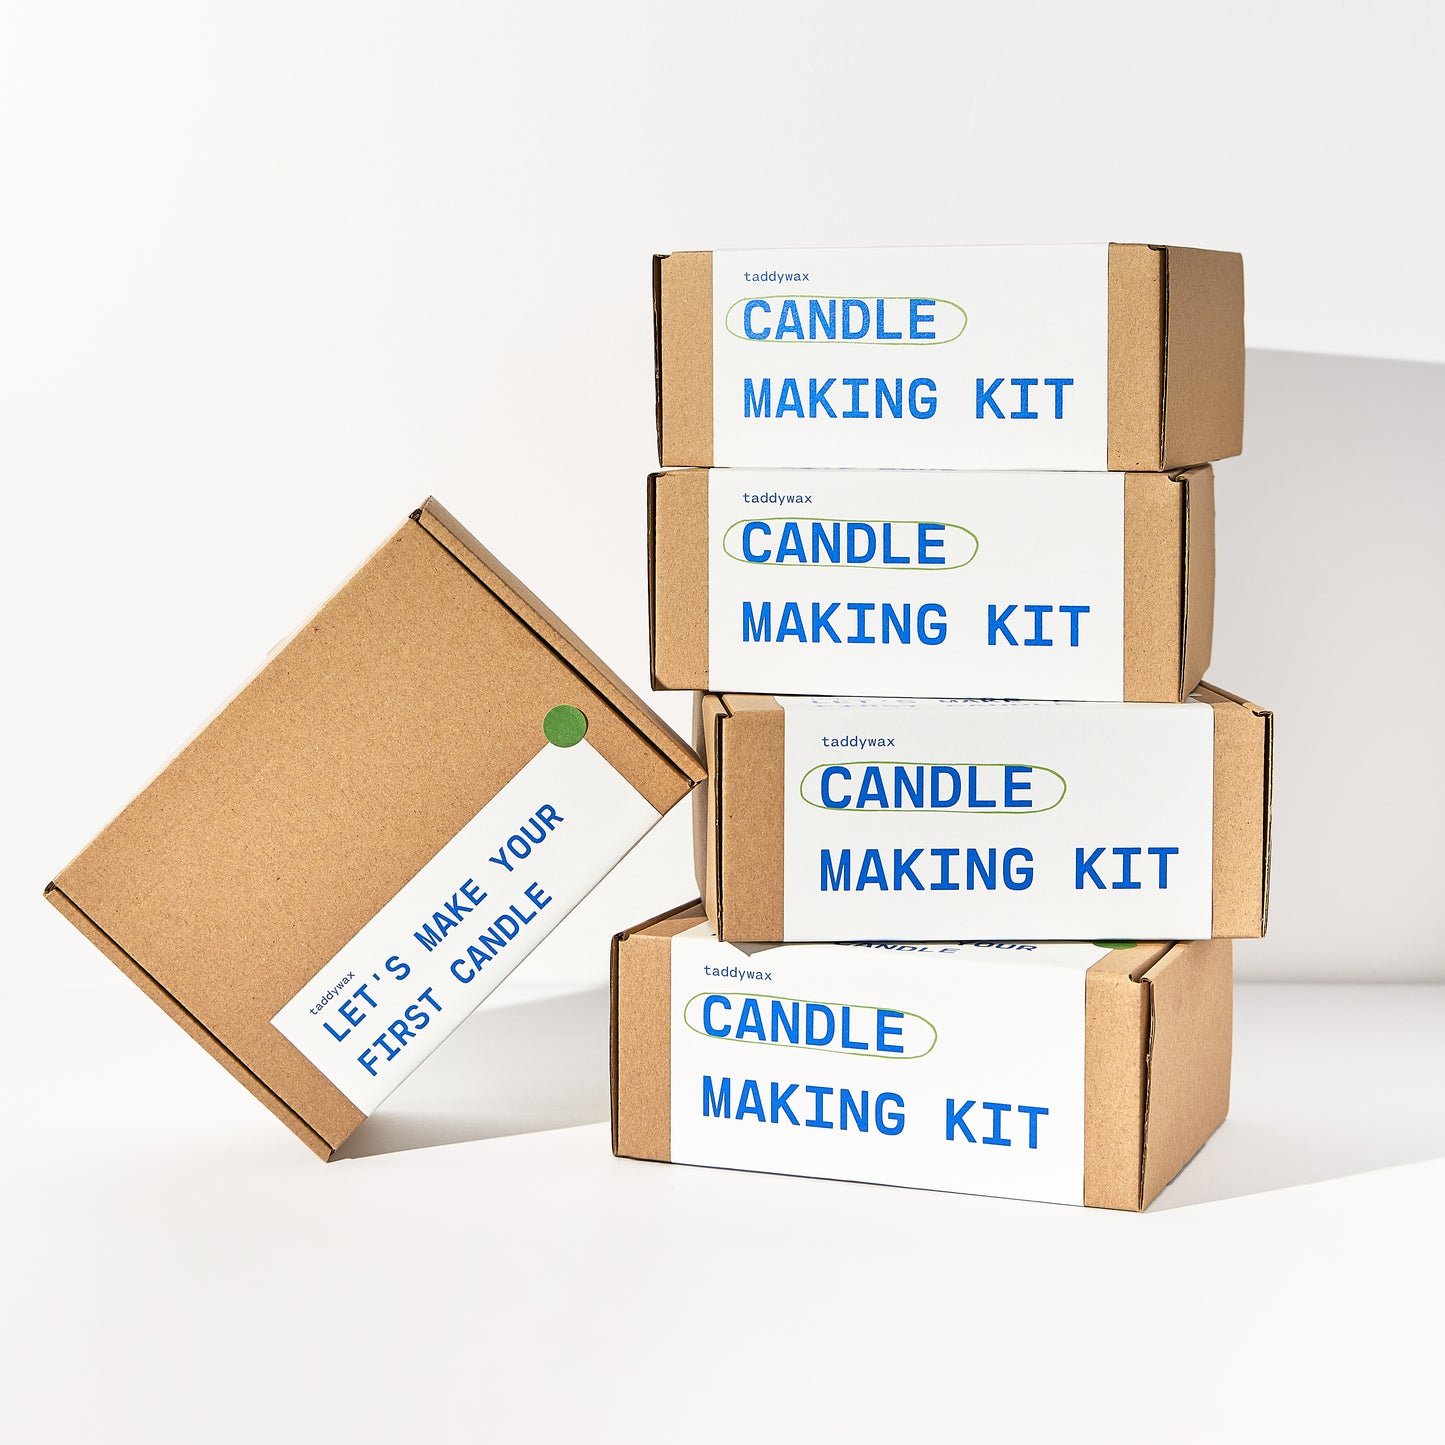 Candle making kit